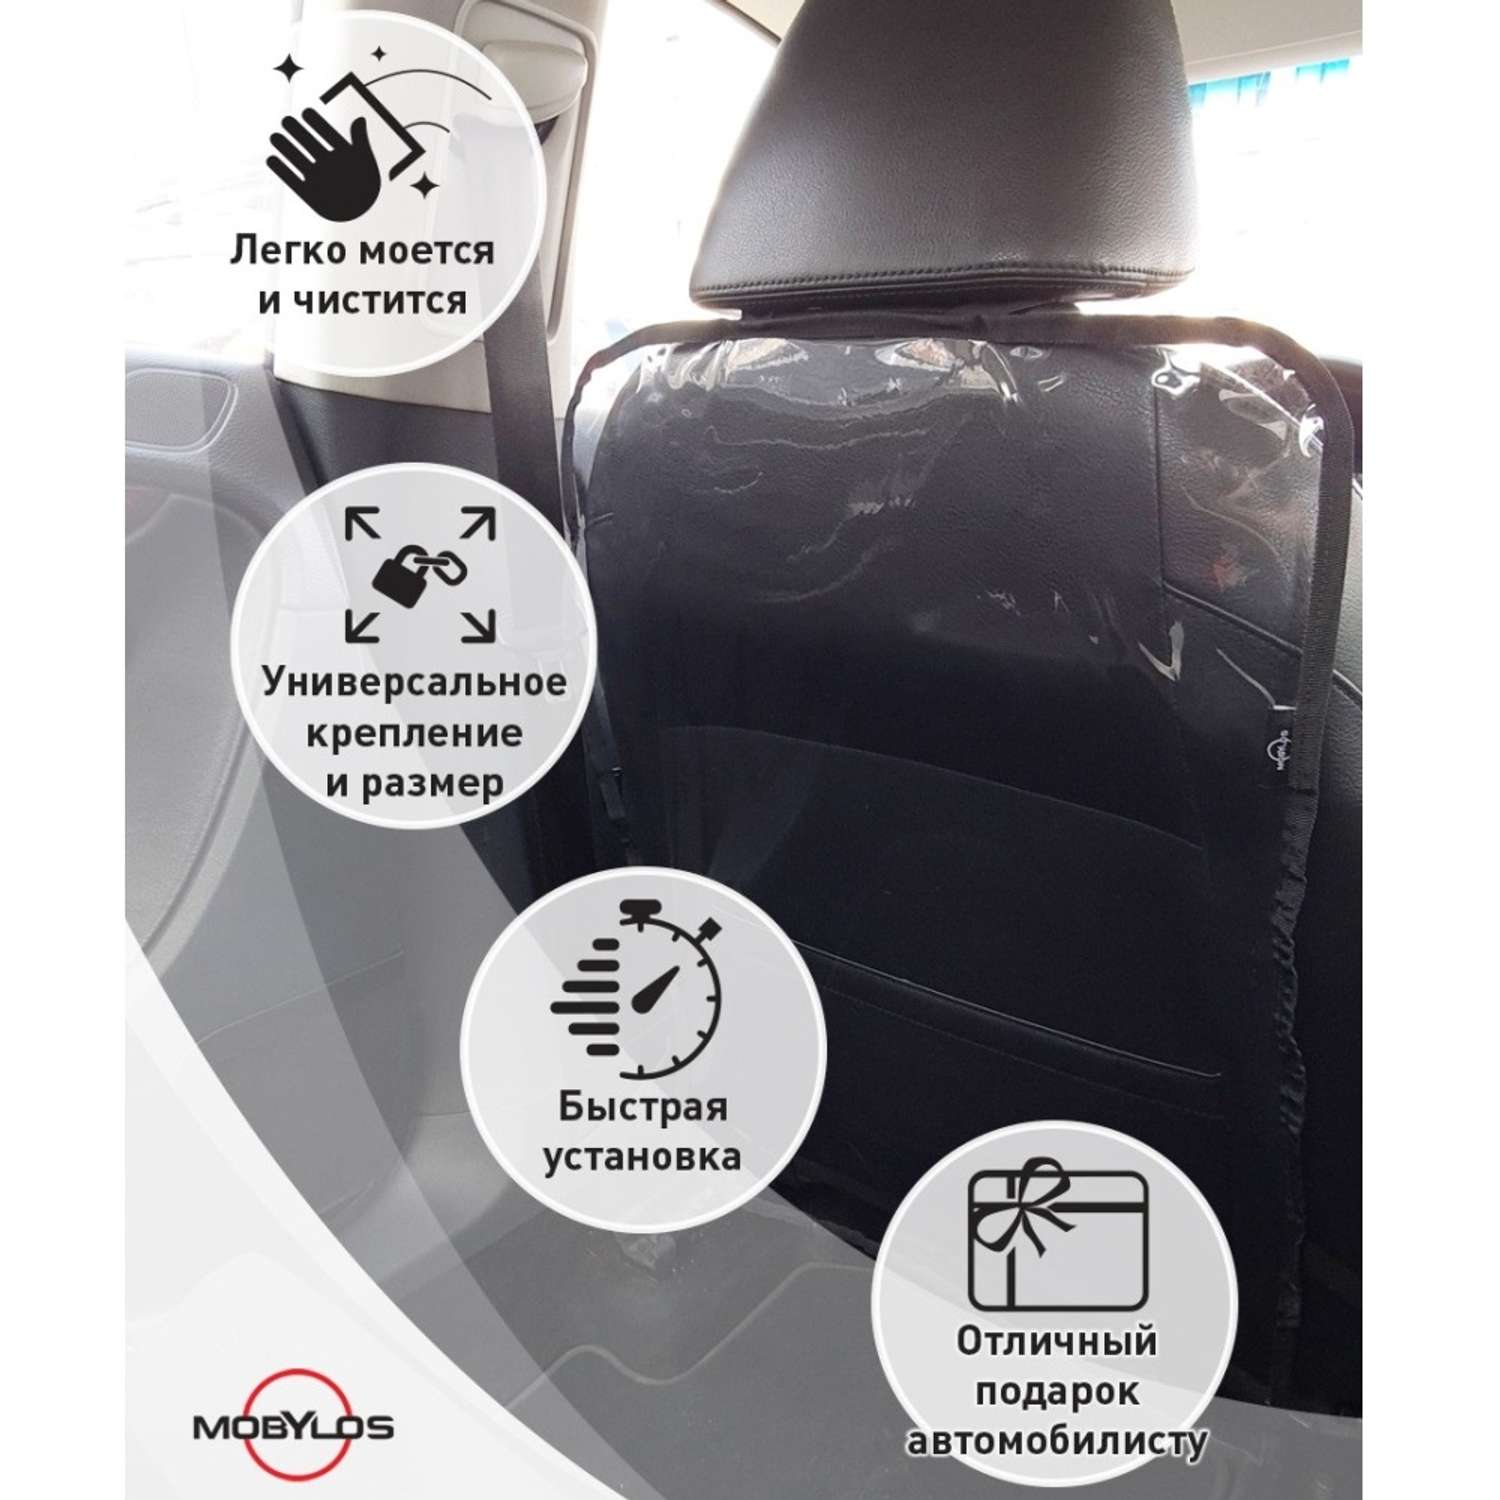 Защитная накидка Mobylos прозрачная защита от детских ног на спинку сиденья автомобиля - фото 5